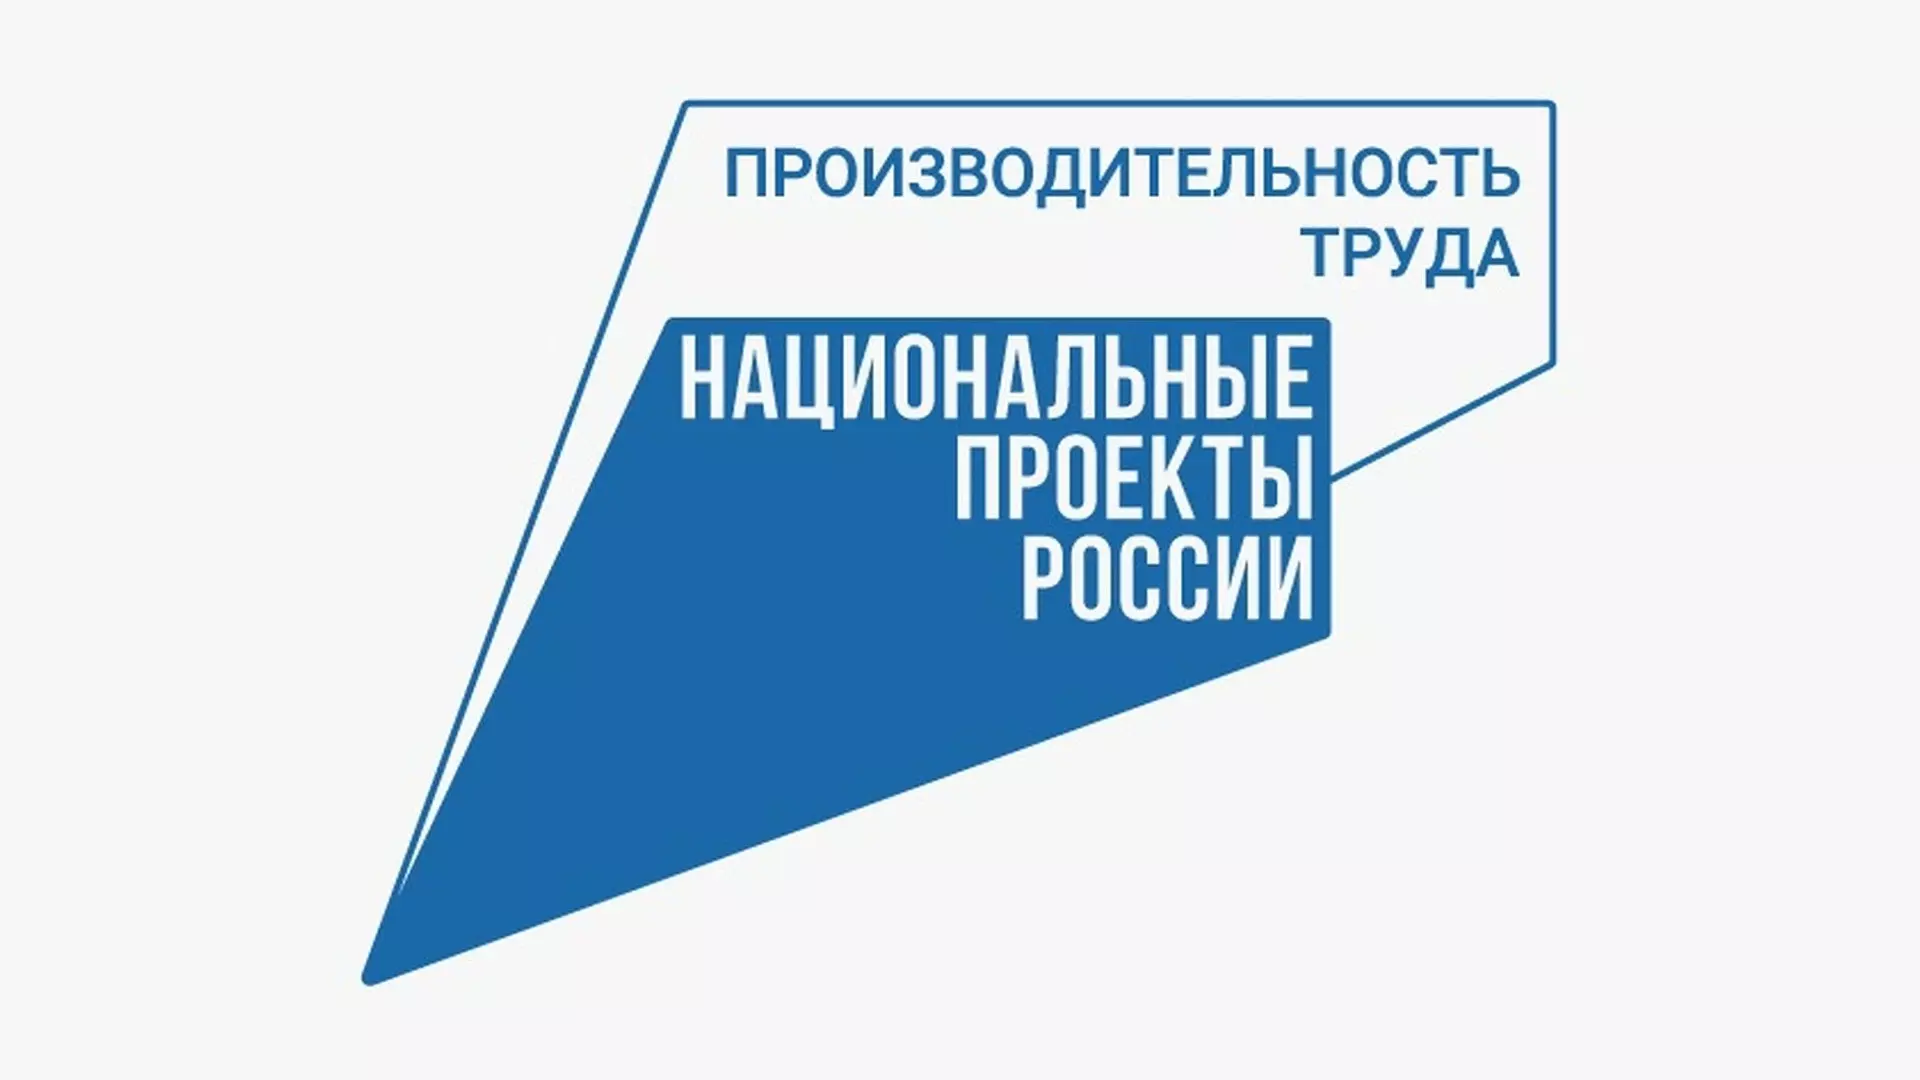 На ООО «Оренбургский пропант» и ООО «Хлебозавод» завершается активная фаза нацпроекта